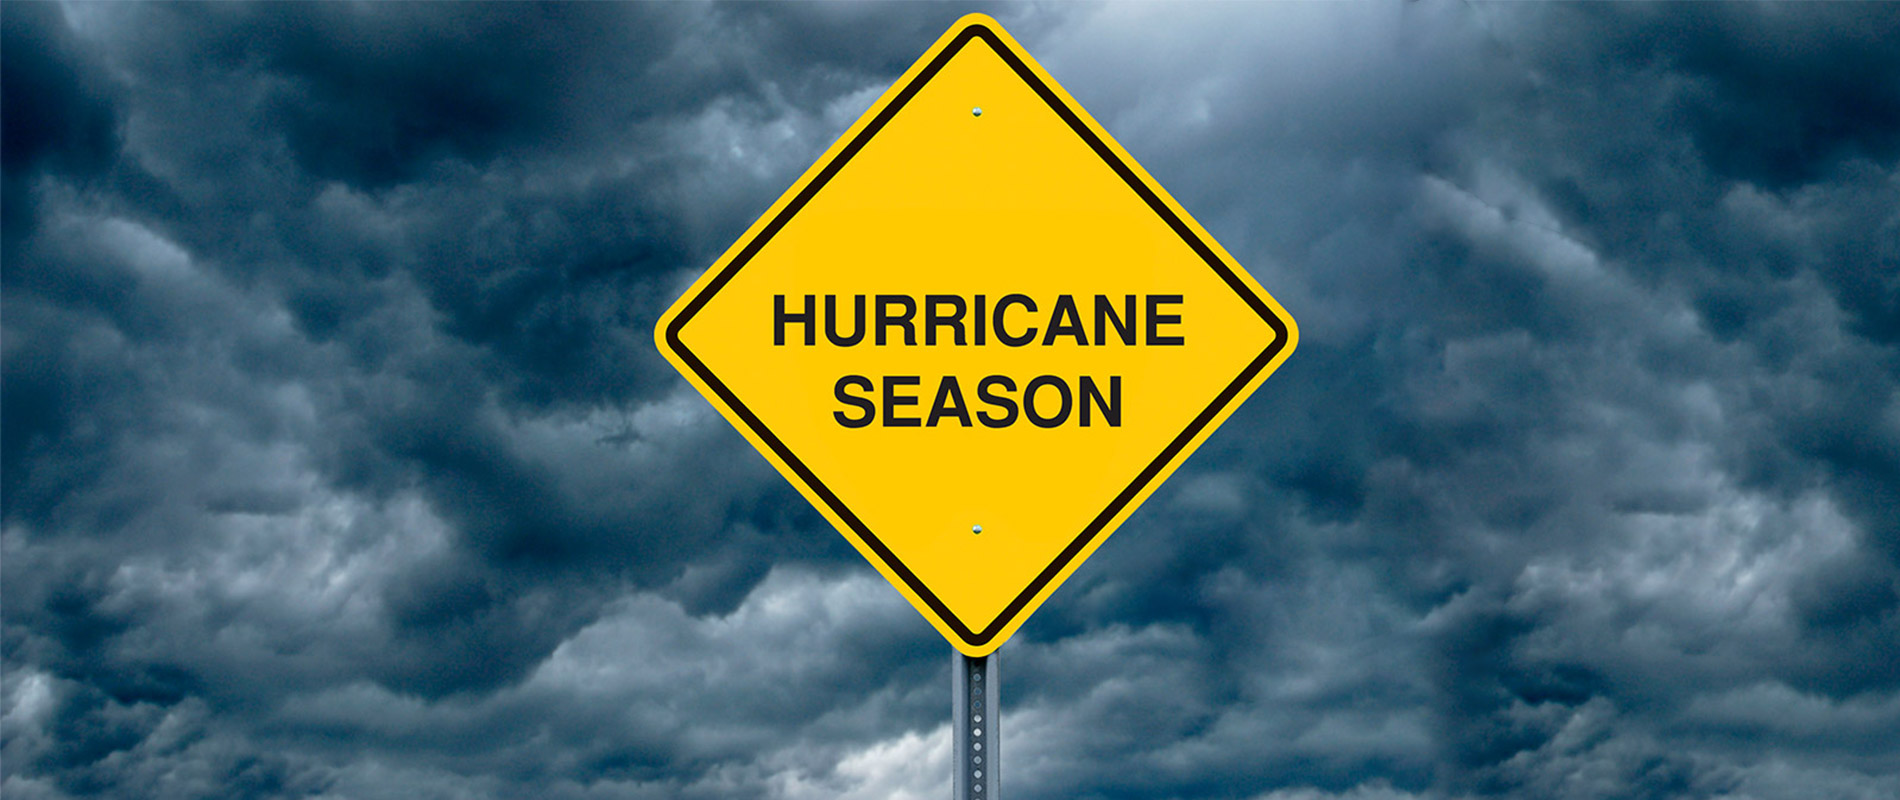 tc-hurricane-season-1900x800.jpg